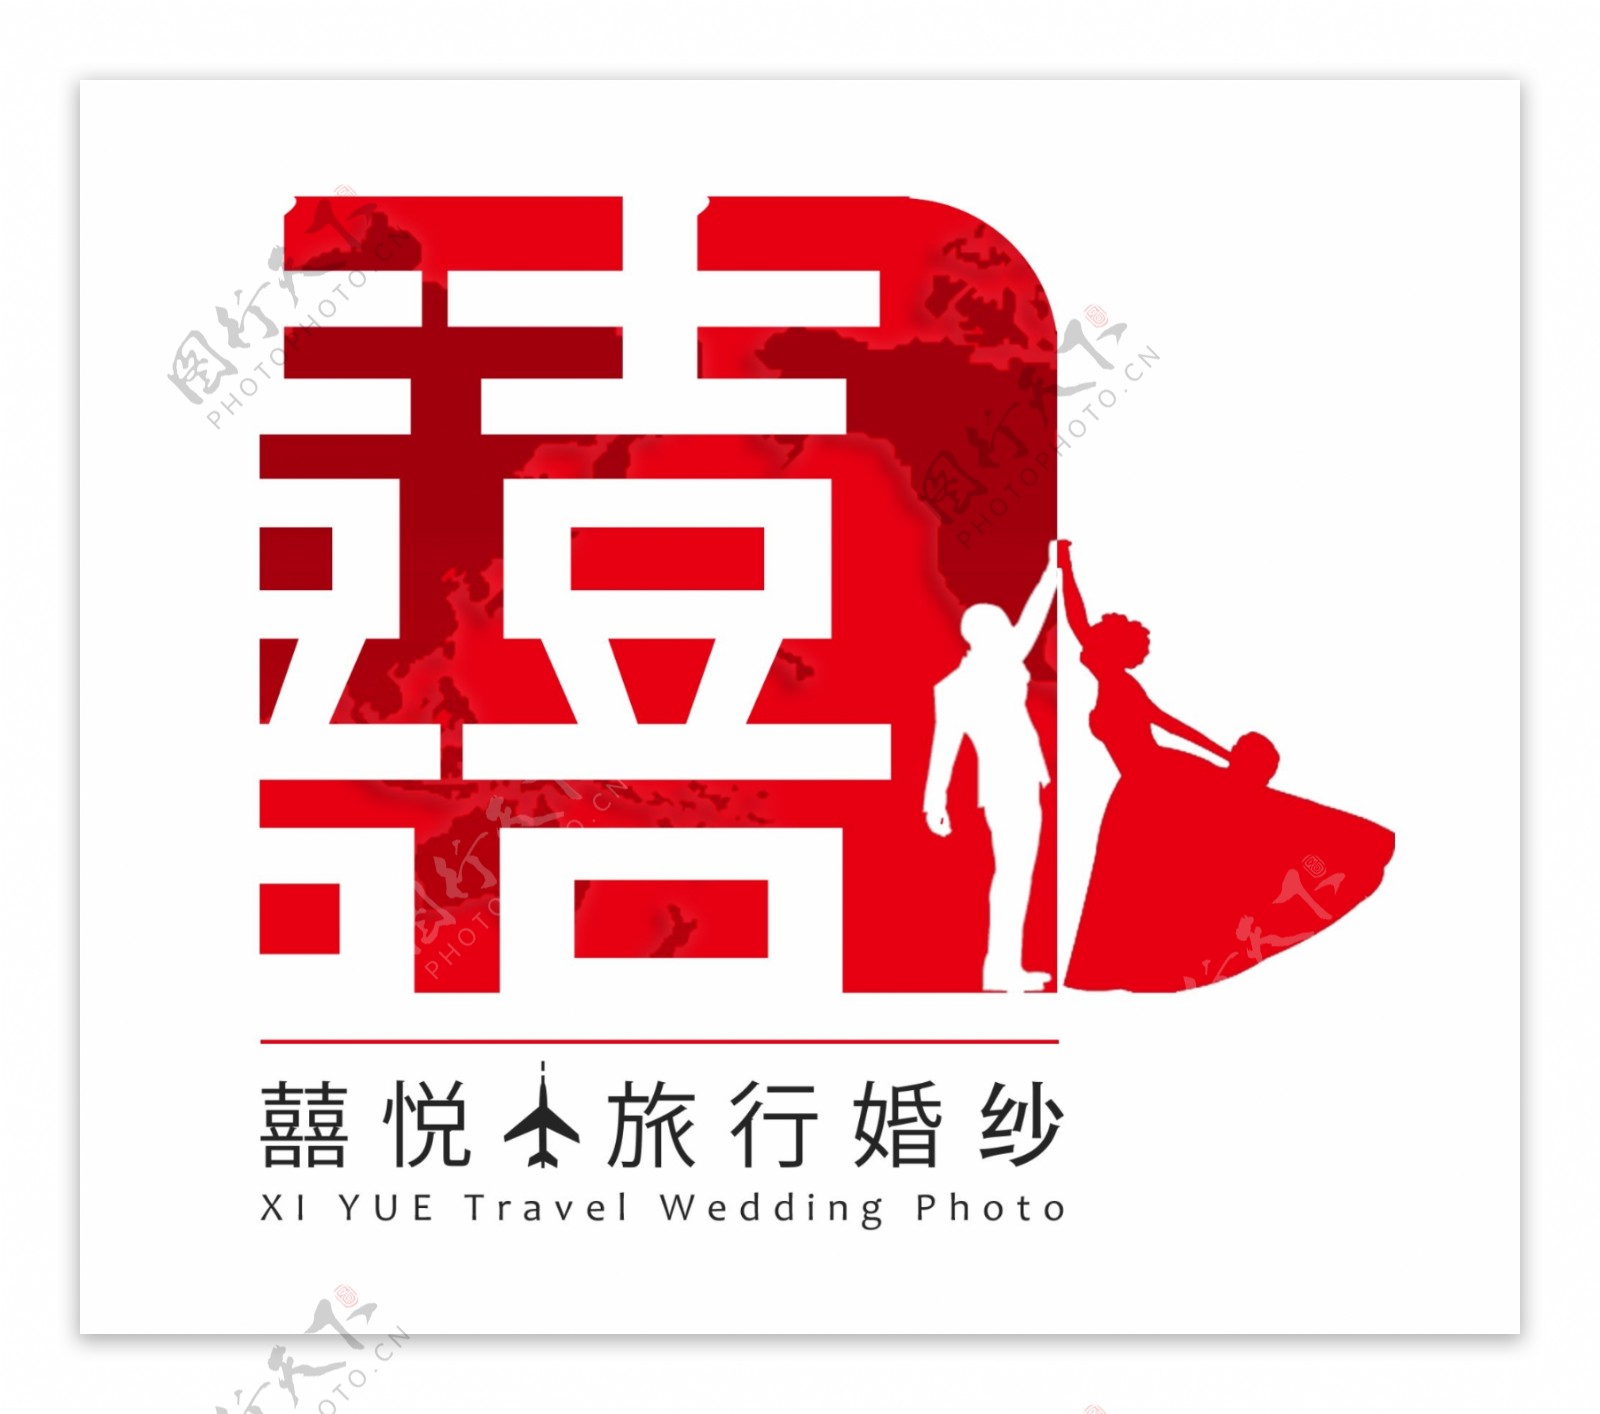 婚纱旅行公司logo